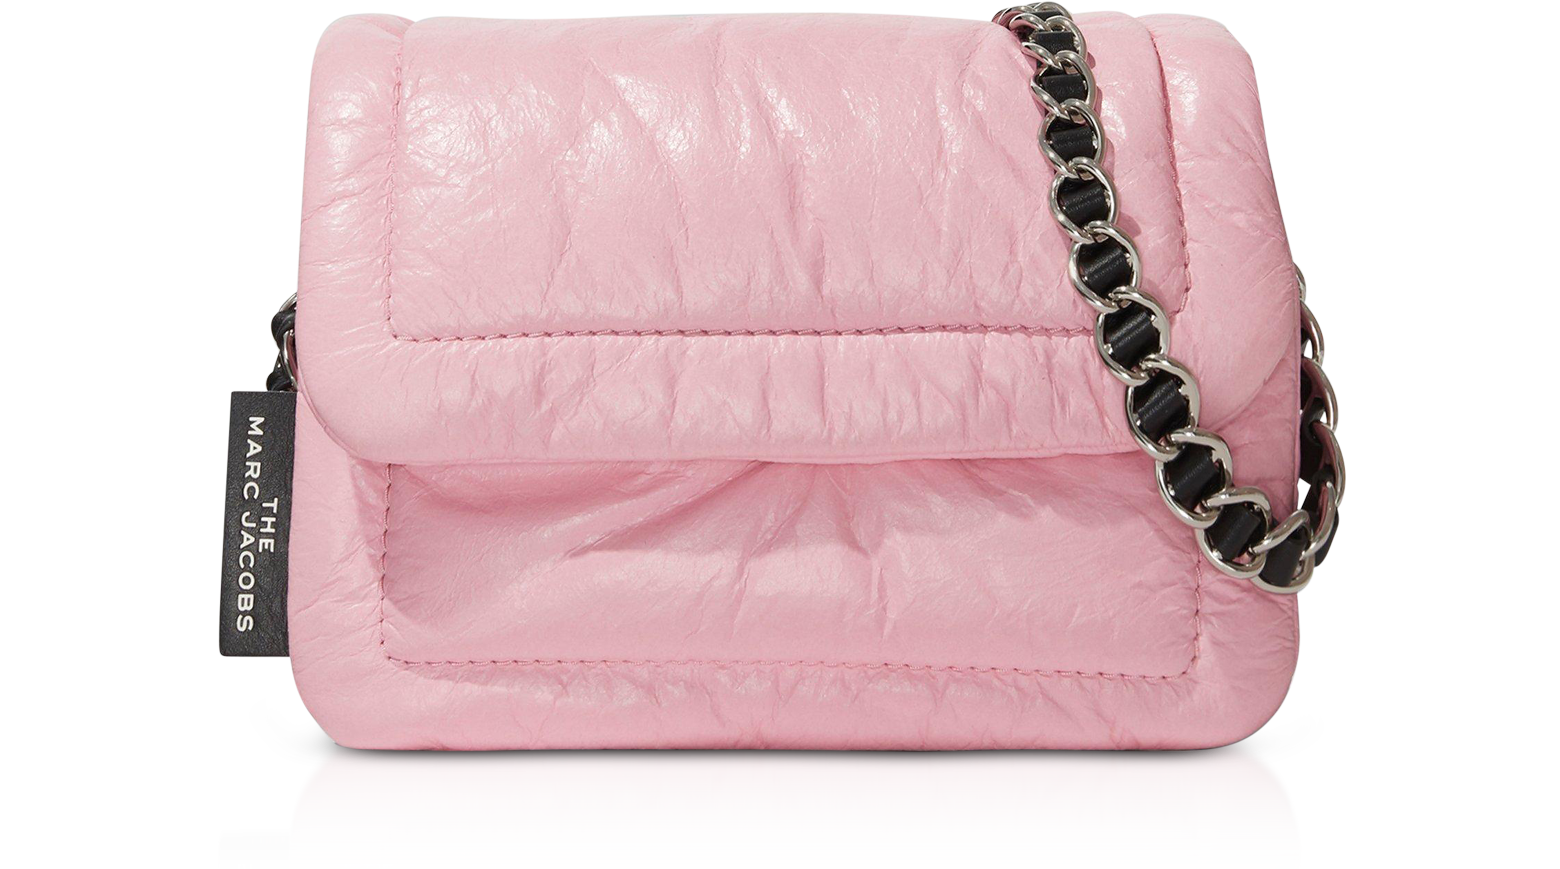 Marc Jacobs Mini Pillow Leather Shoulder Bag